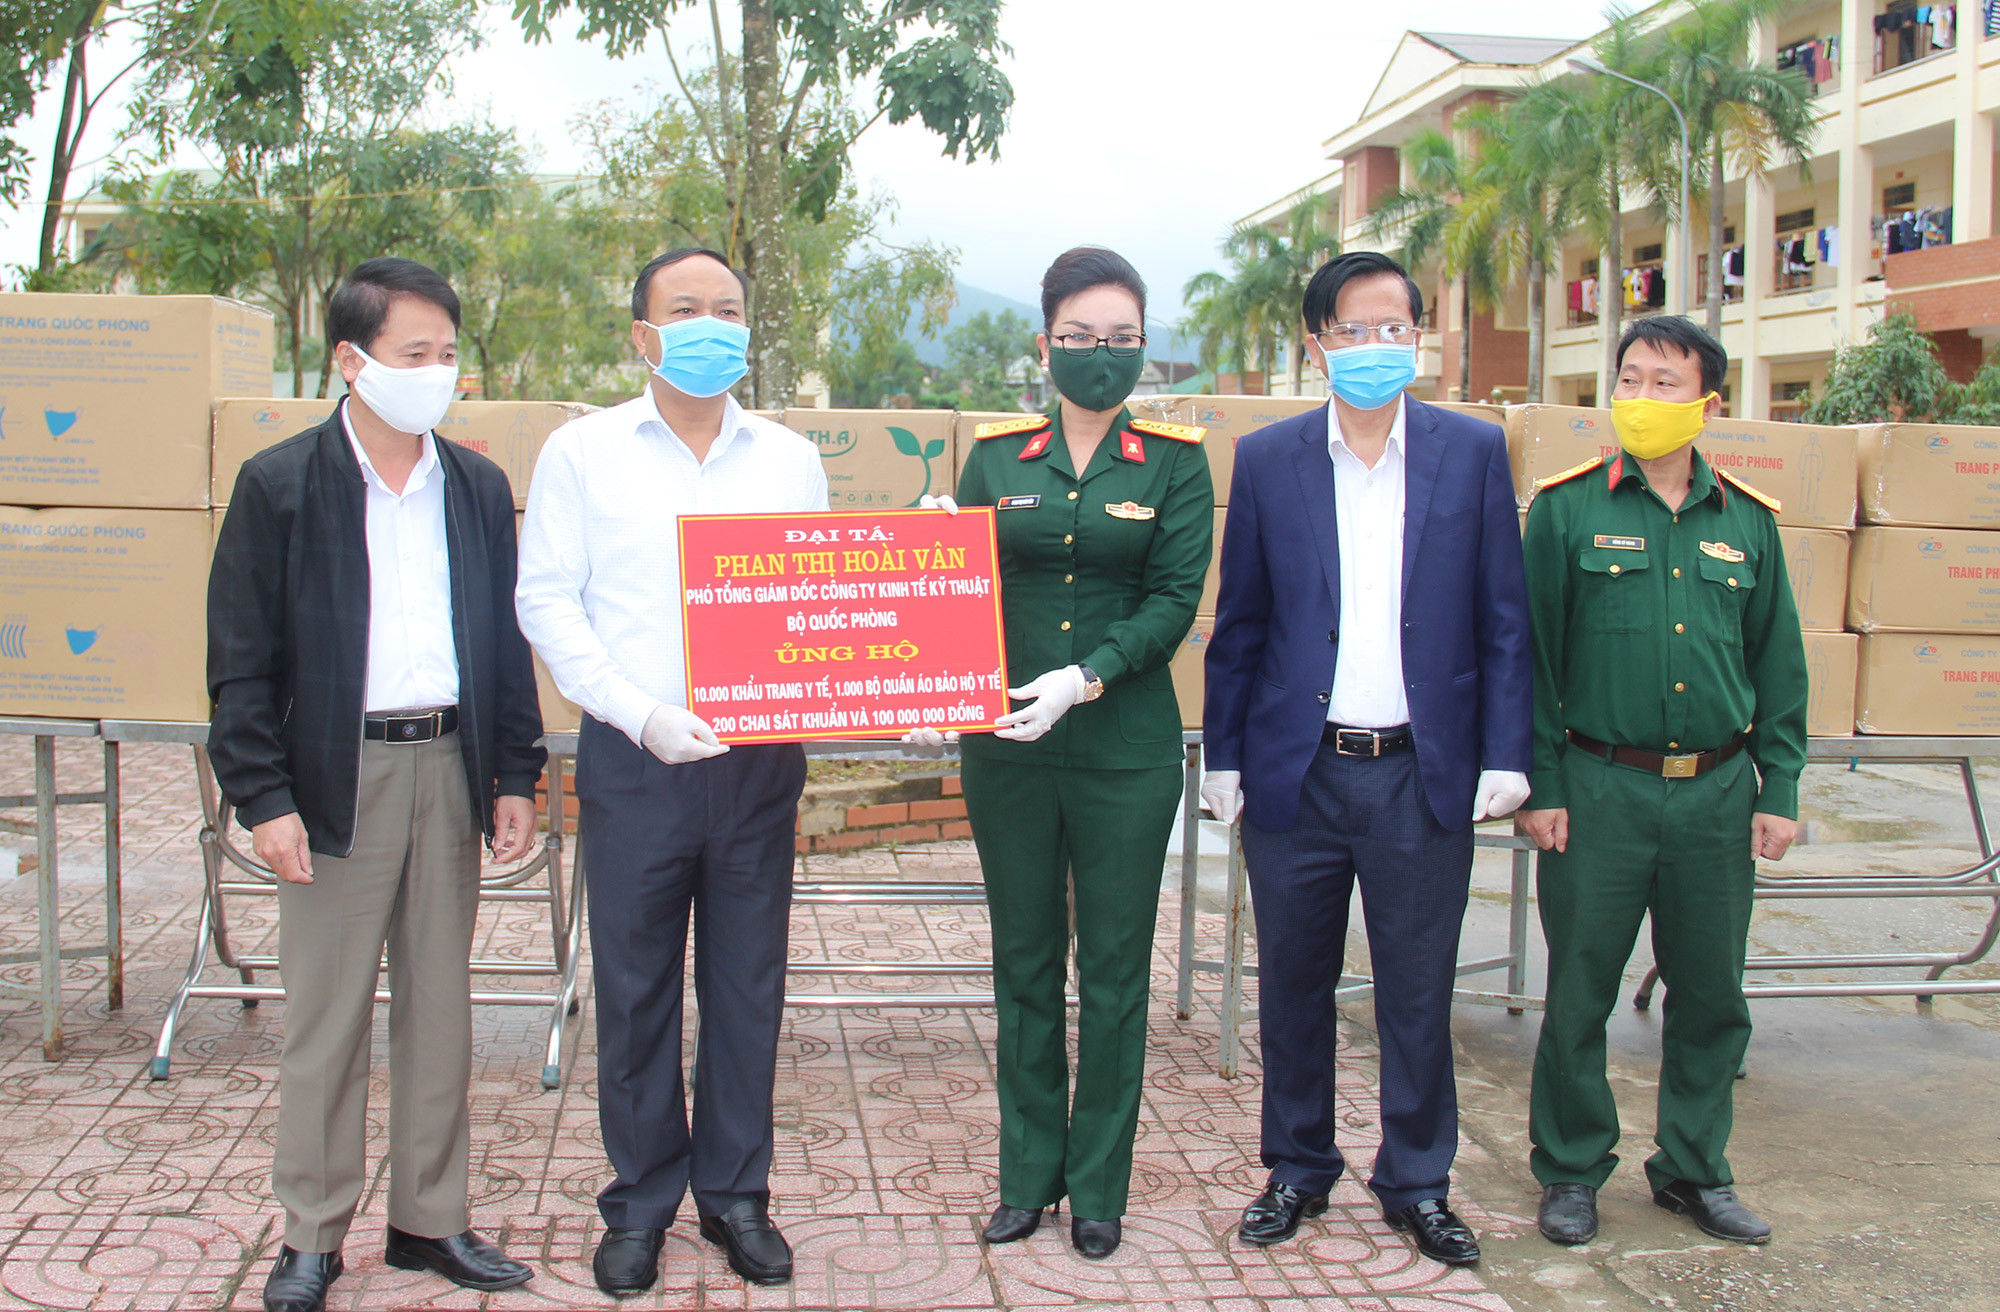 Đại tá Phan Thị Hoài Vân, phó tổng giám đốc Công ty kinh tế kỹ thuật công nghiệp (Bộ quốc phòng), một người con của quê hương đã trao tặng 500 triệu đồng ủng hộ chống dịch CoVid-19 và xây nhà tình nghĩa. Ảnh Văn Trường